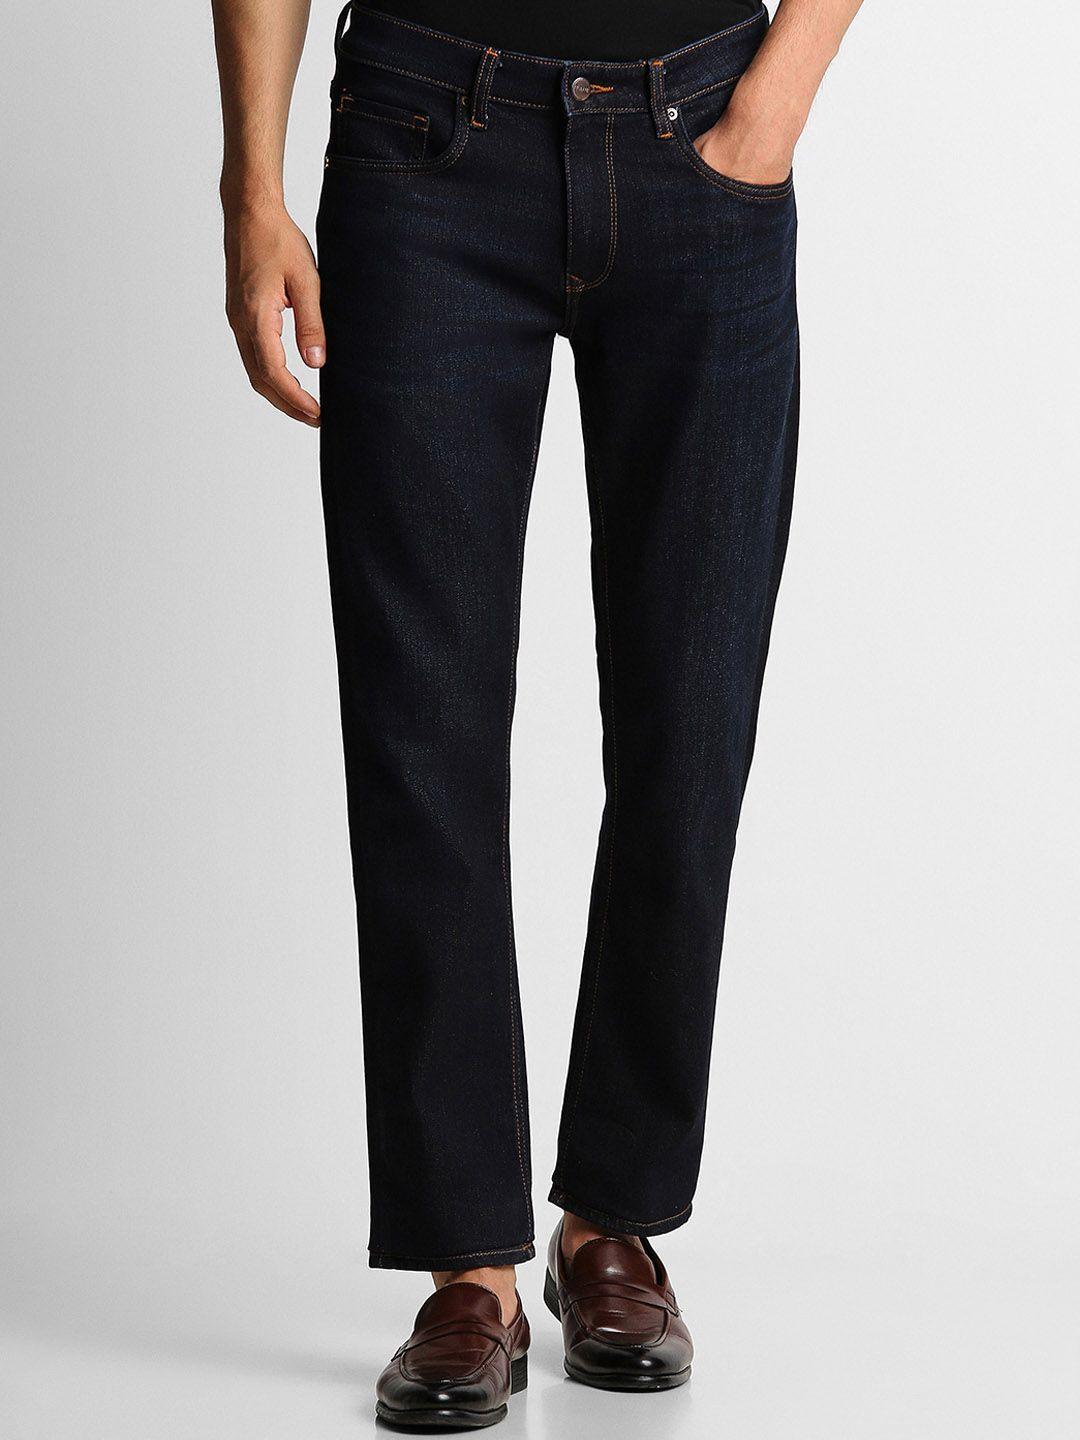 louis-philippe-jeans-men-mid-rise-slim-fit-jeans